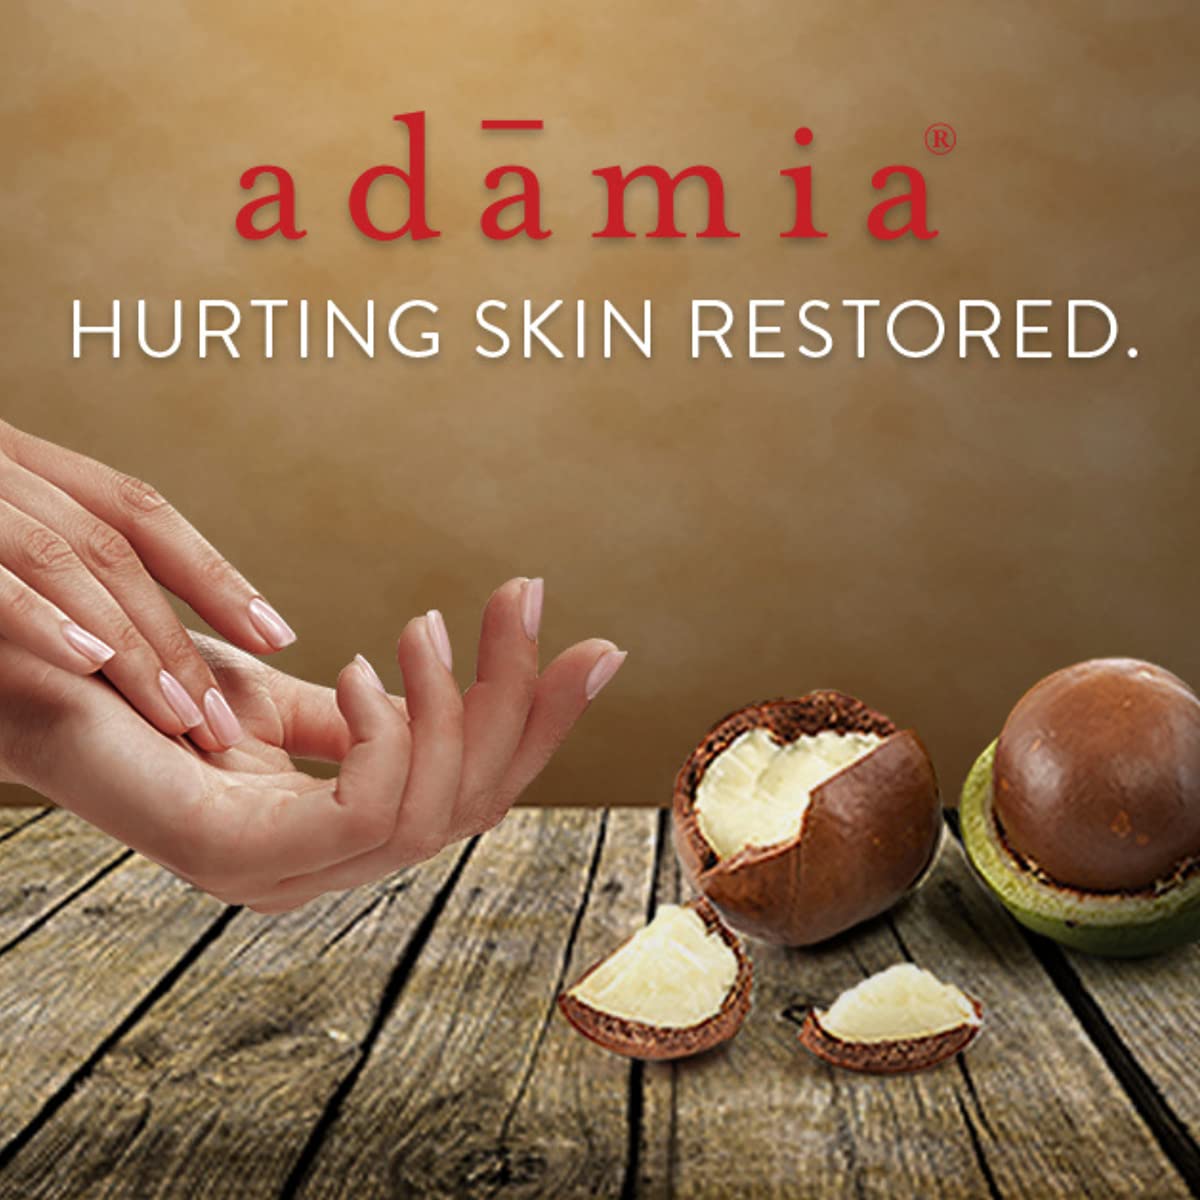 Adamia Therapeutic Repair Lotion with Macadamia Nut Oil and Promega-7, 16 Fl Oz Bottle- Fragrance Free, Paraben Free, Non GMO, White